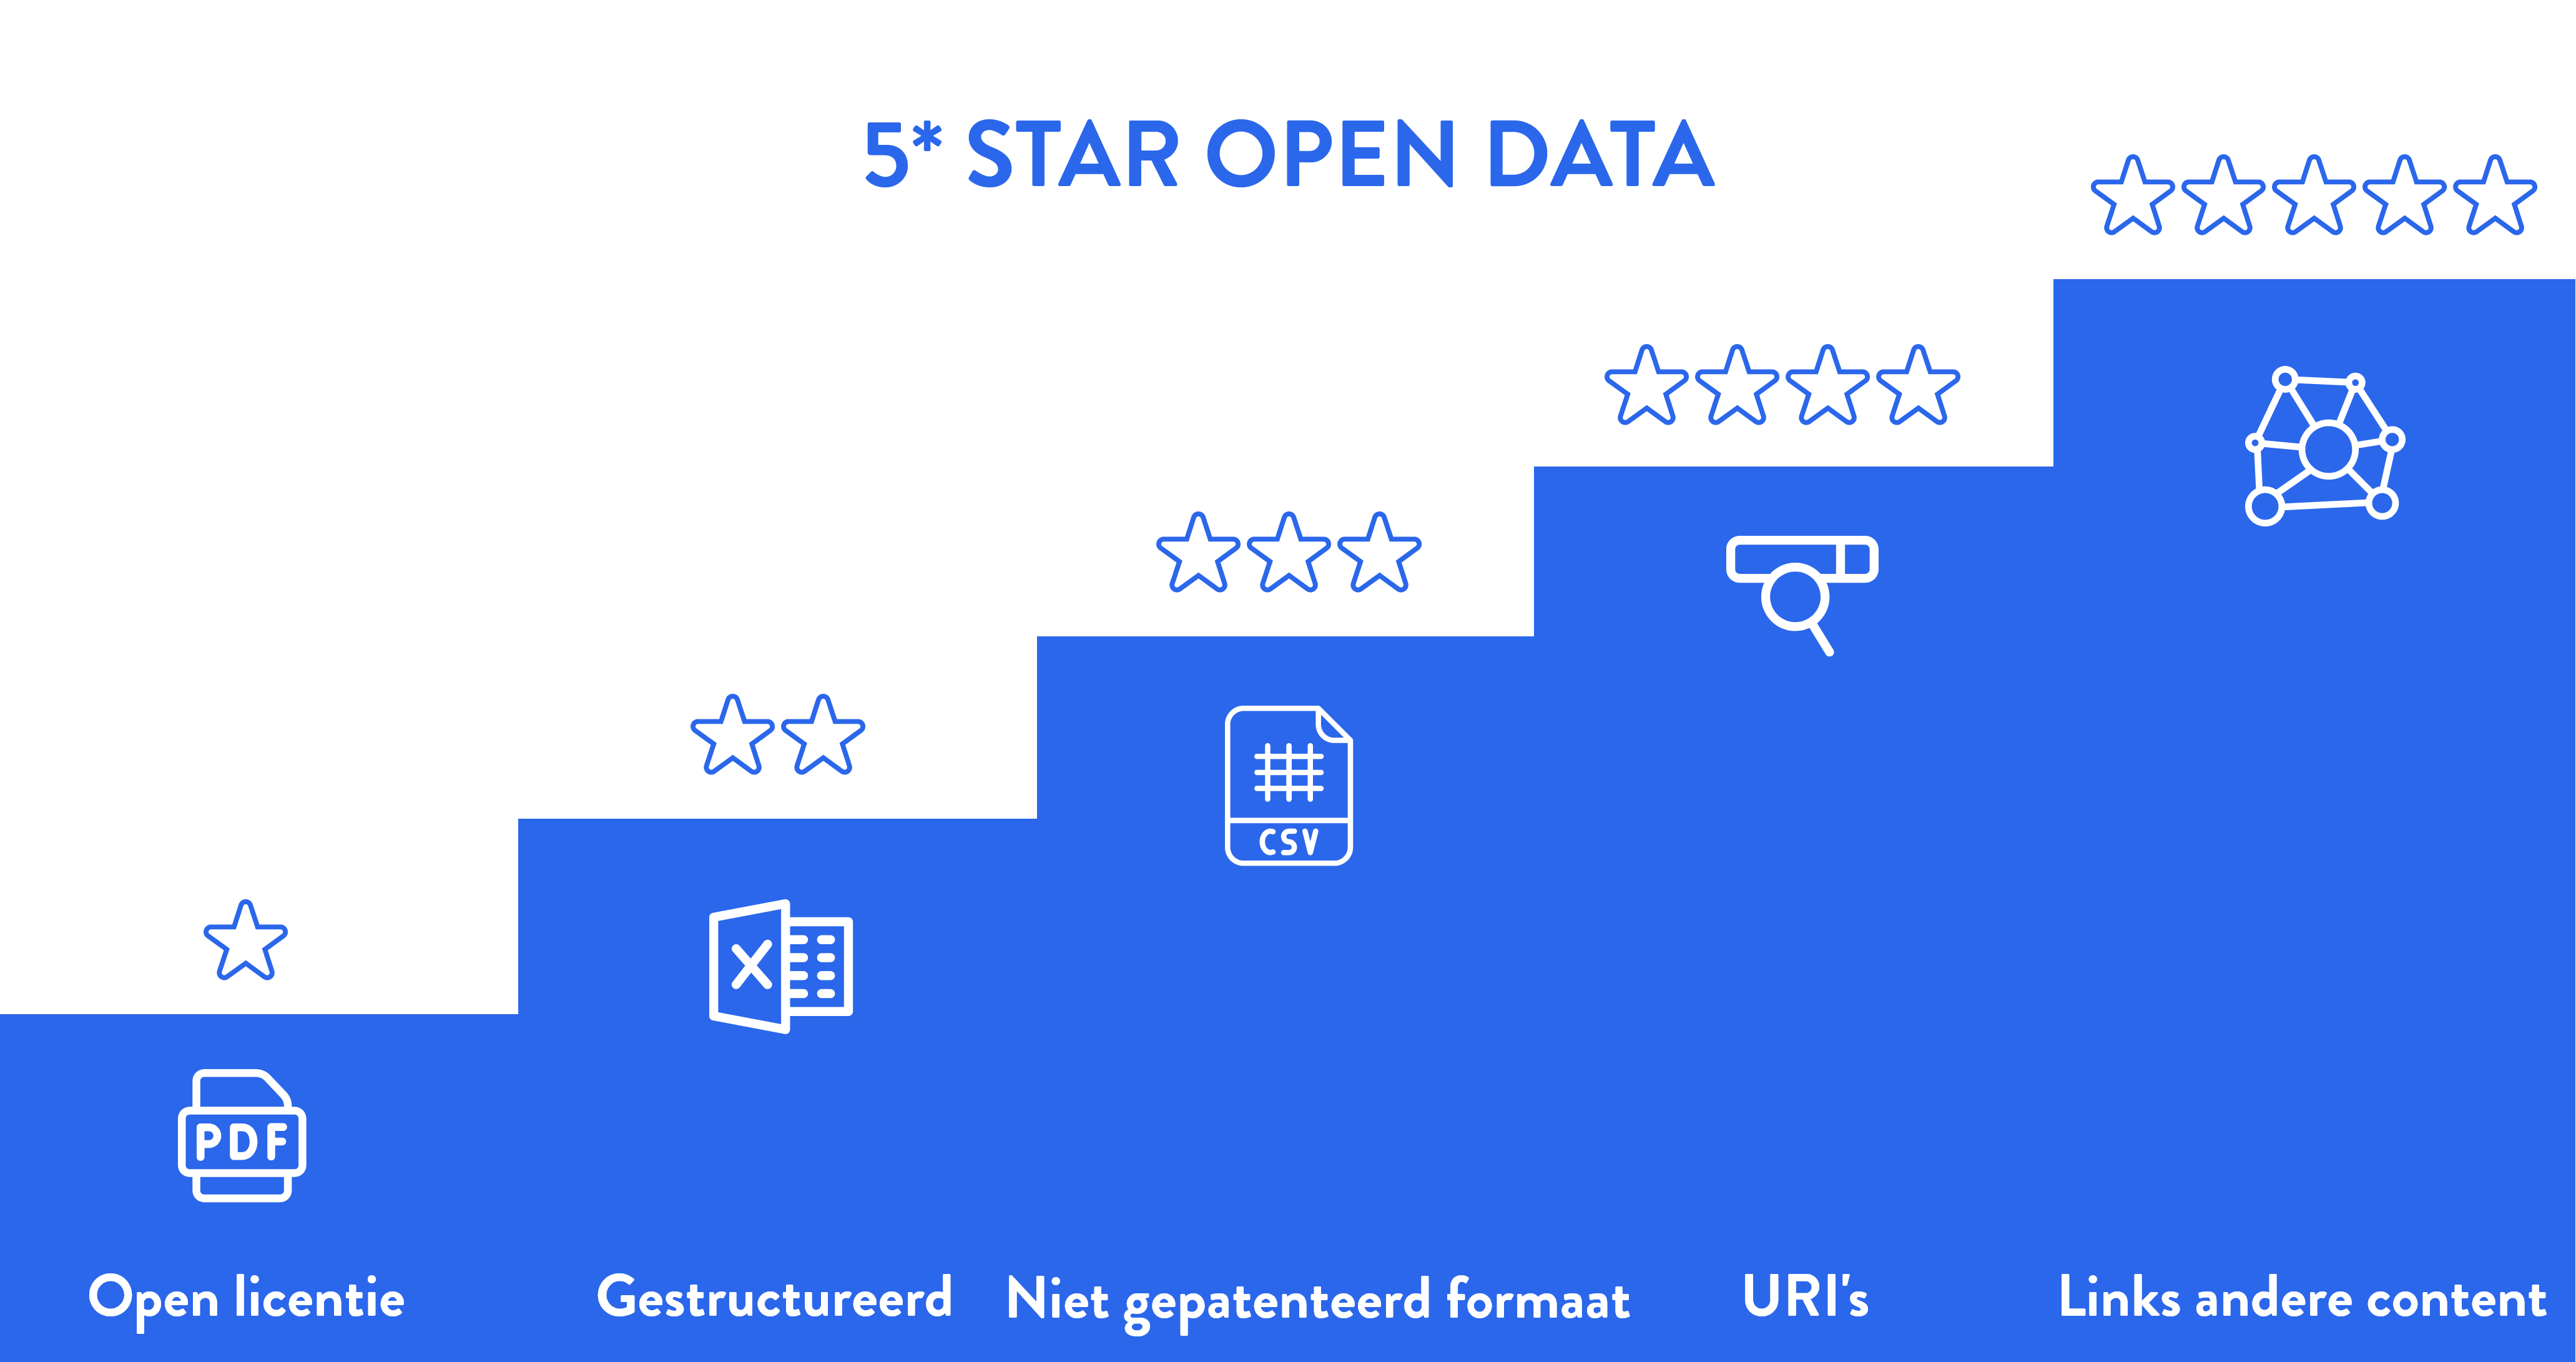 5* Open Data: visueel voorgesteld